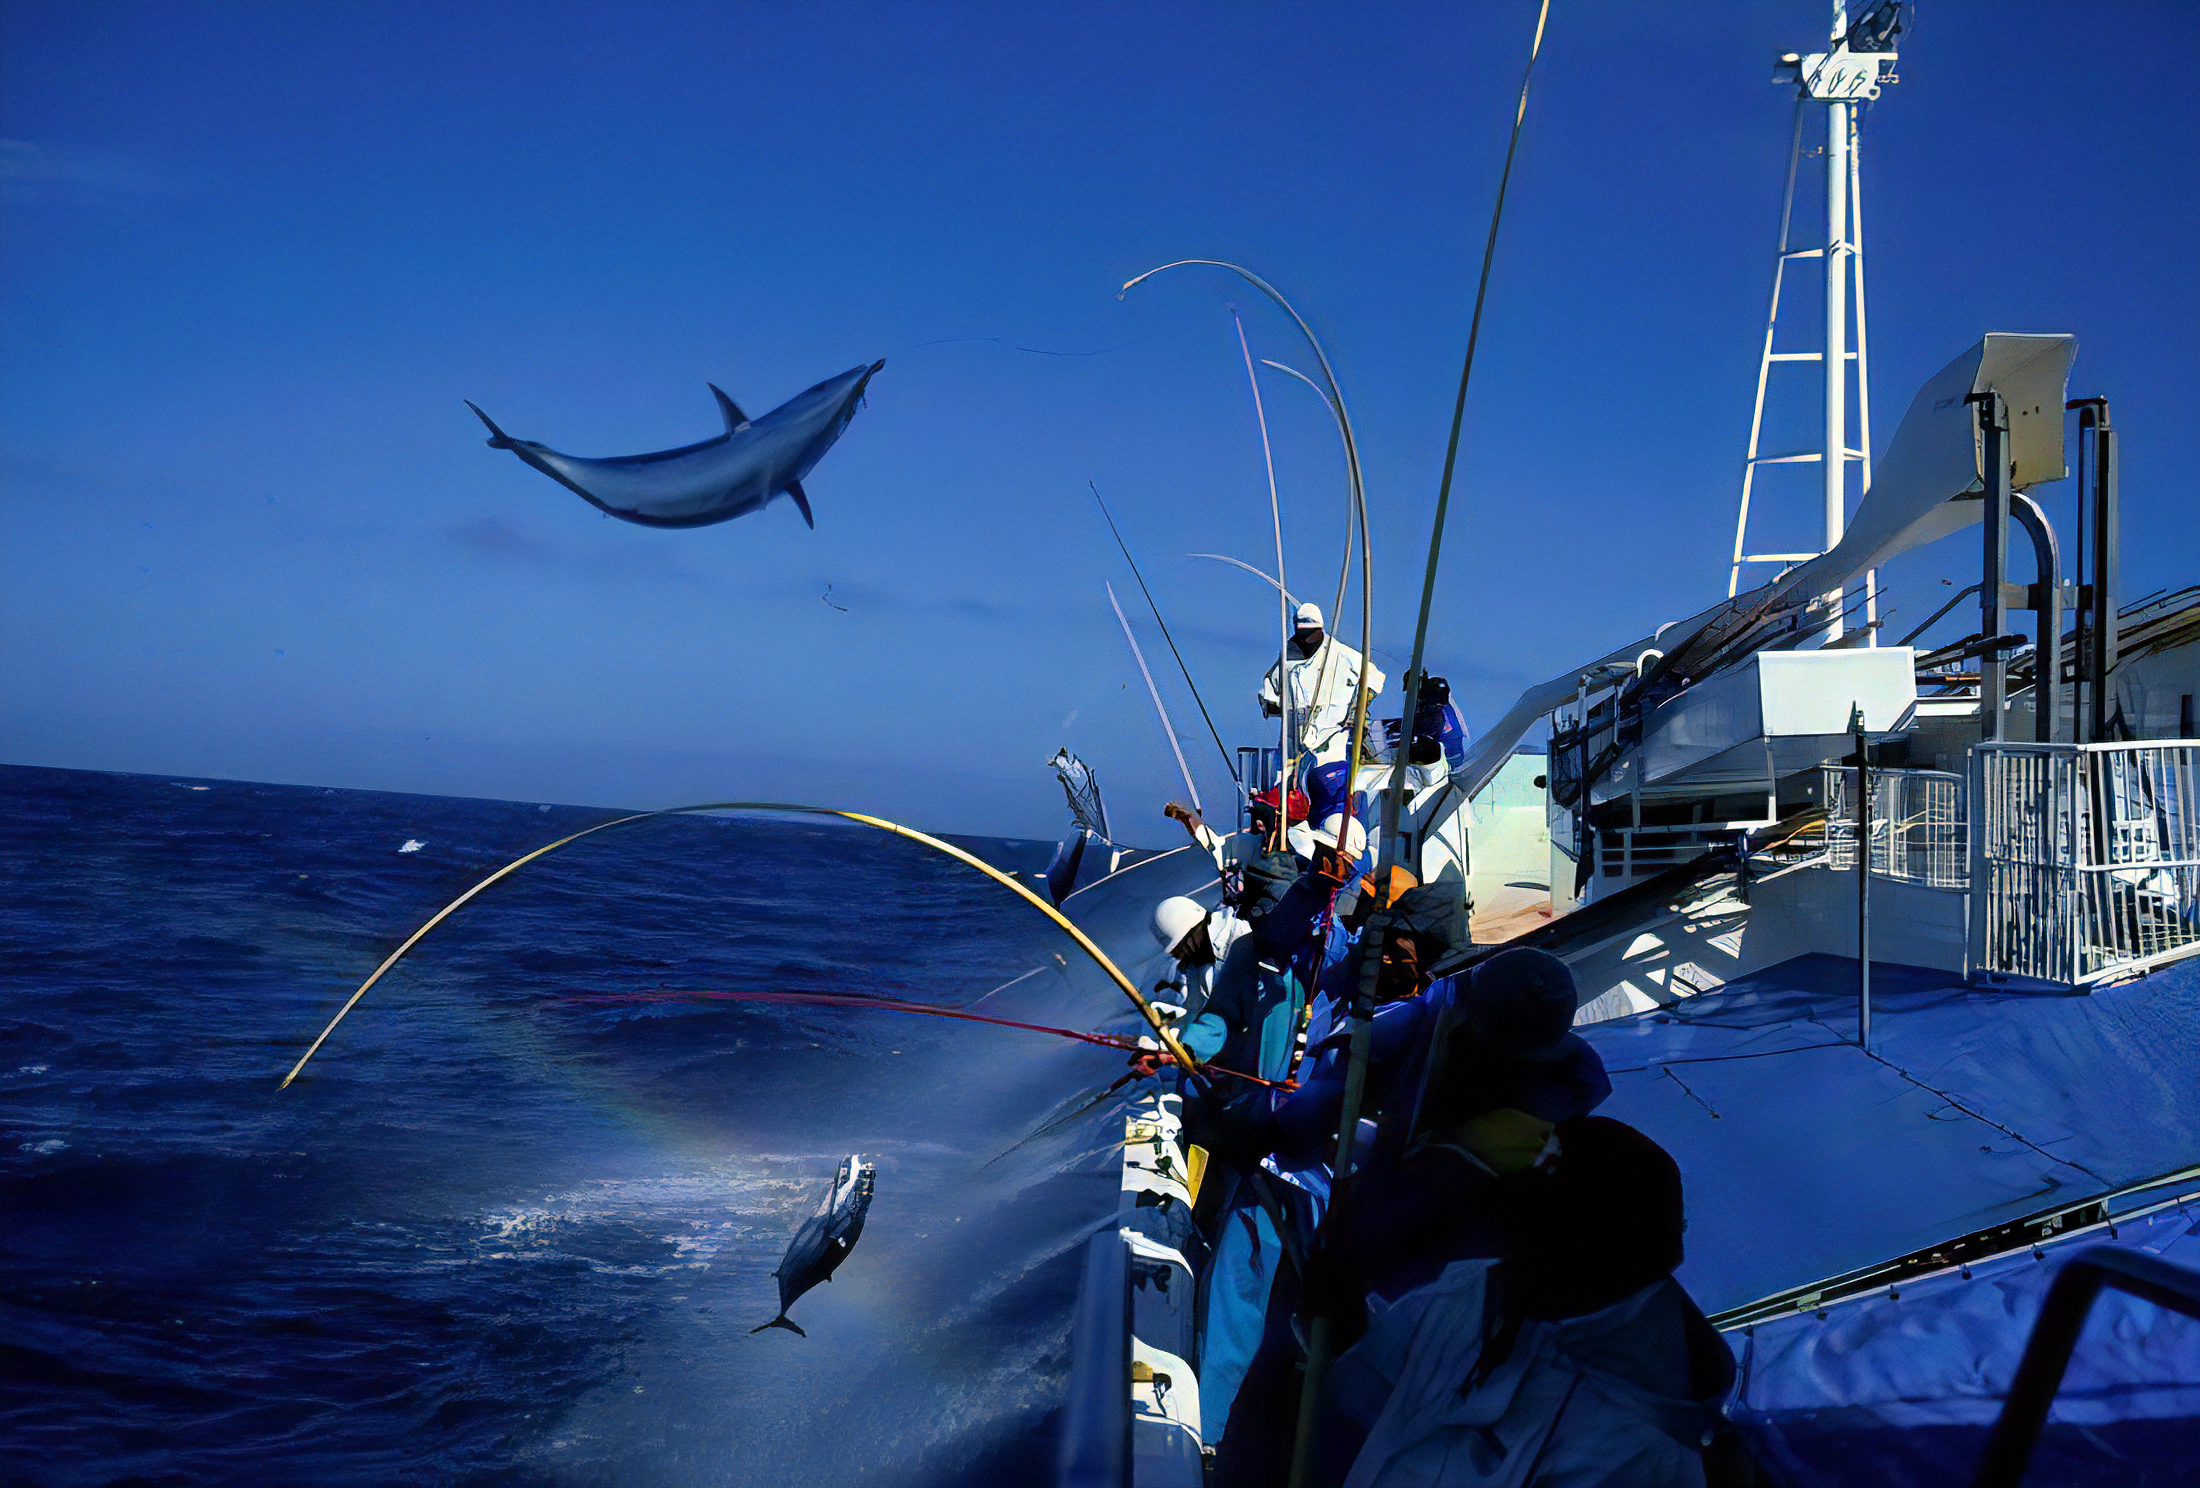 日本の伝統漁法「カツオの一本釣り」が、“環境に配慮した持続可能な漁法”として認められる